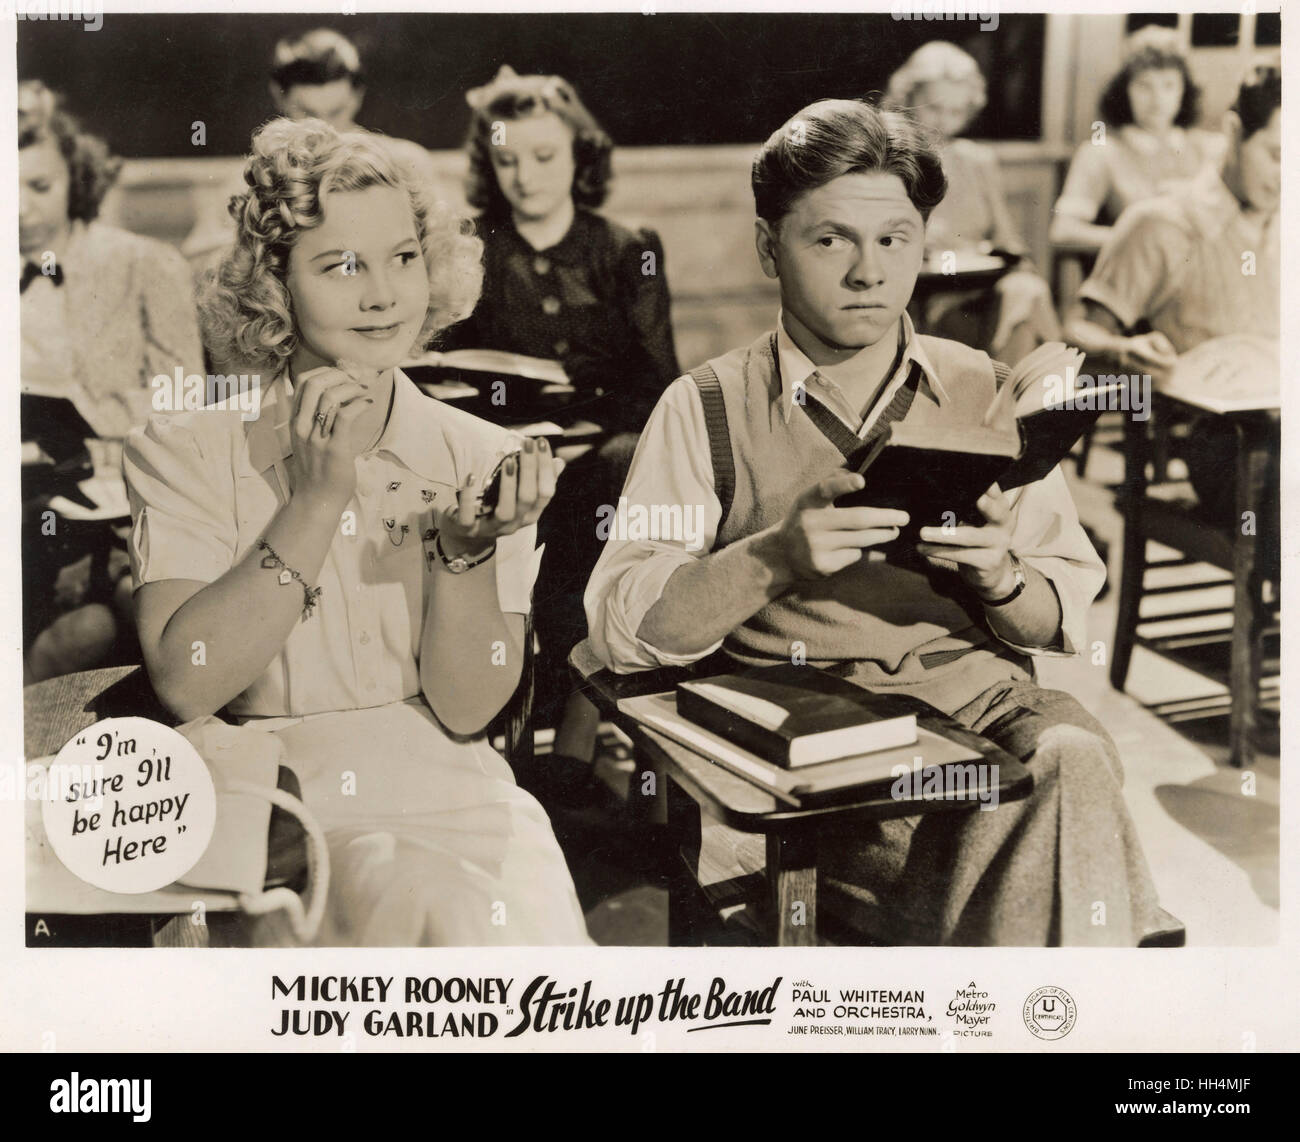 Cine - Strike Up the Band - protagonizada por Mickey Rooney (1920-2014) y Judy Garland (1922-1969) - un 1940 en blanco y negro americano película musical producida por el Arthur Freed unidad en la Metro-Goldwyn-Mayer (MGM). Foto de stock